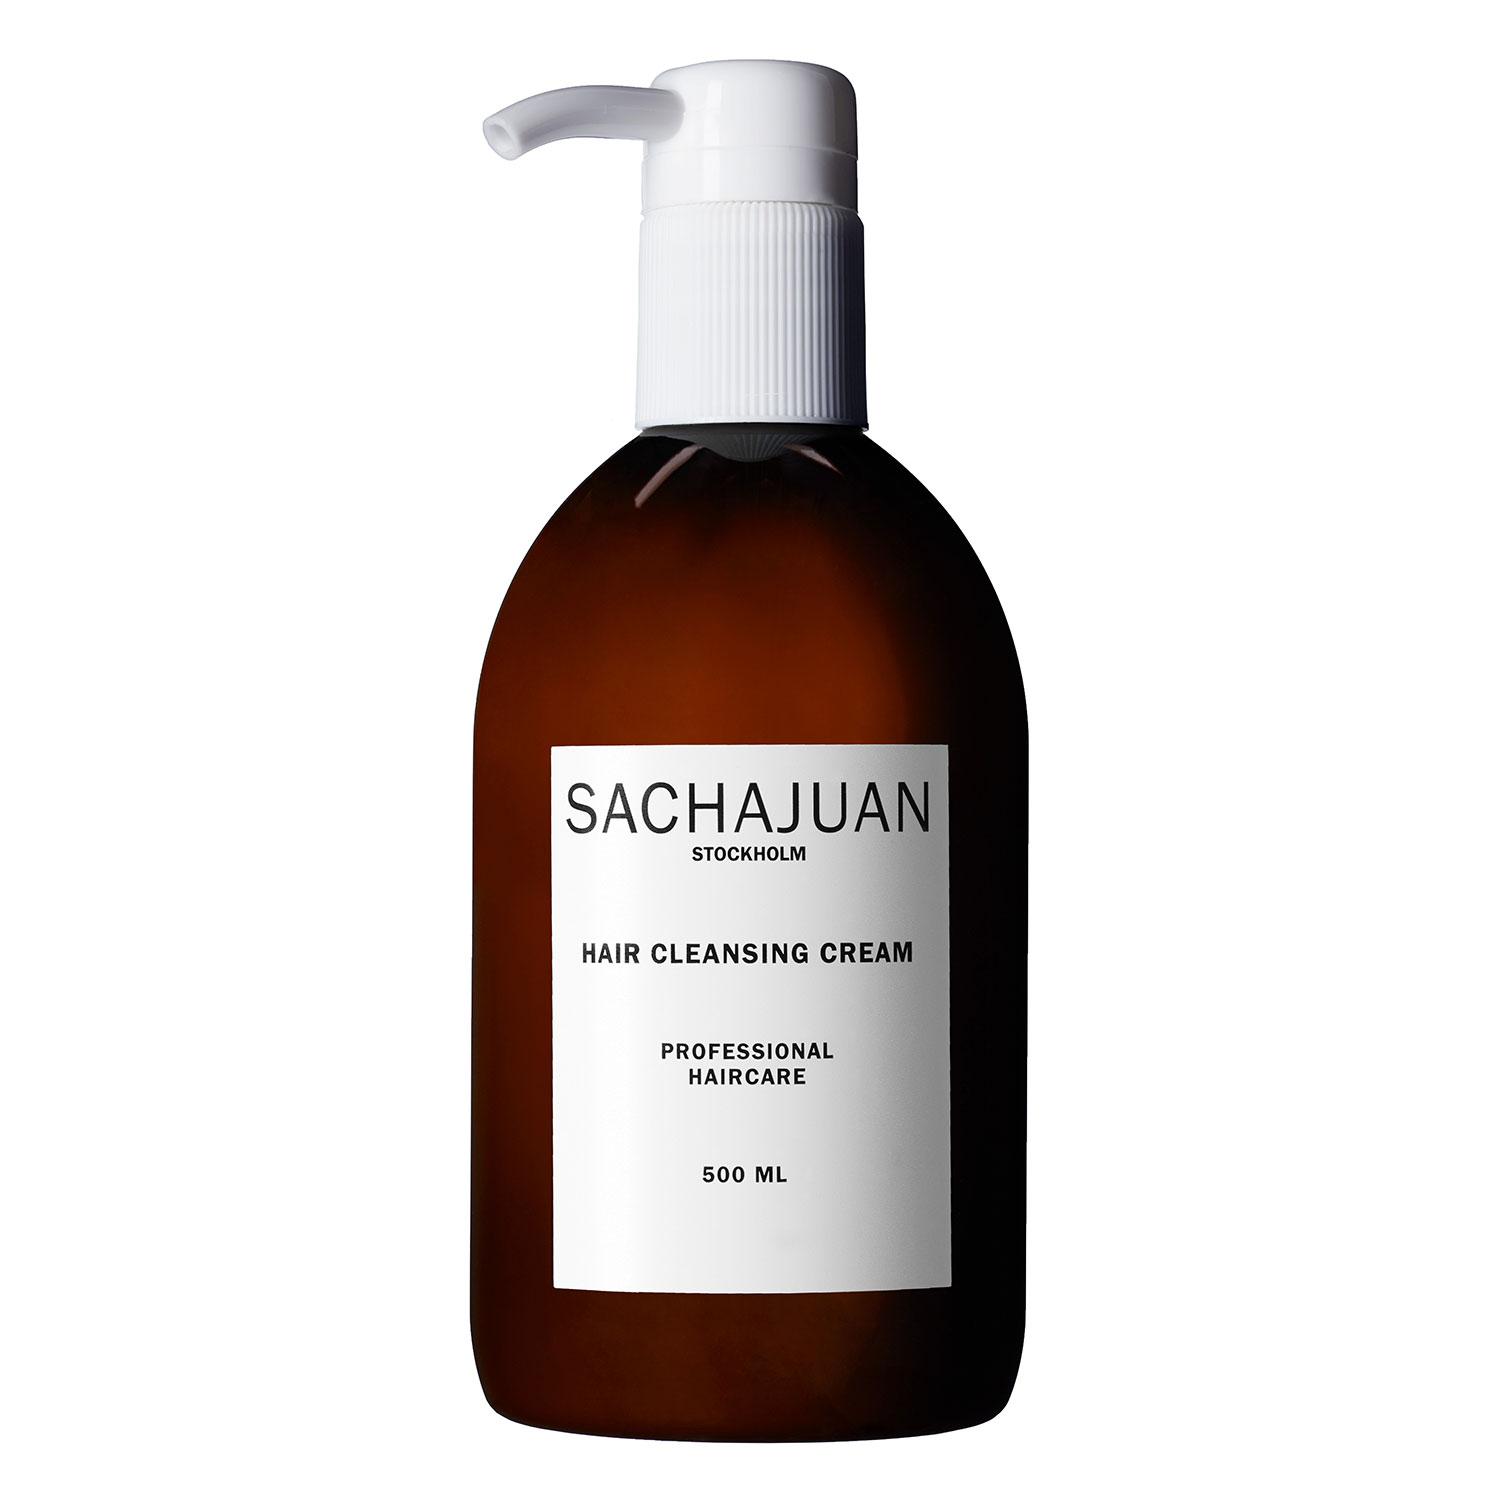 SACHAJUAN - Hair Cleansing Cream